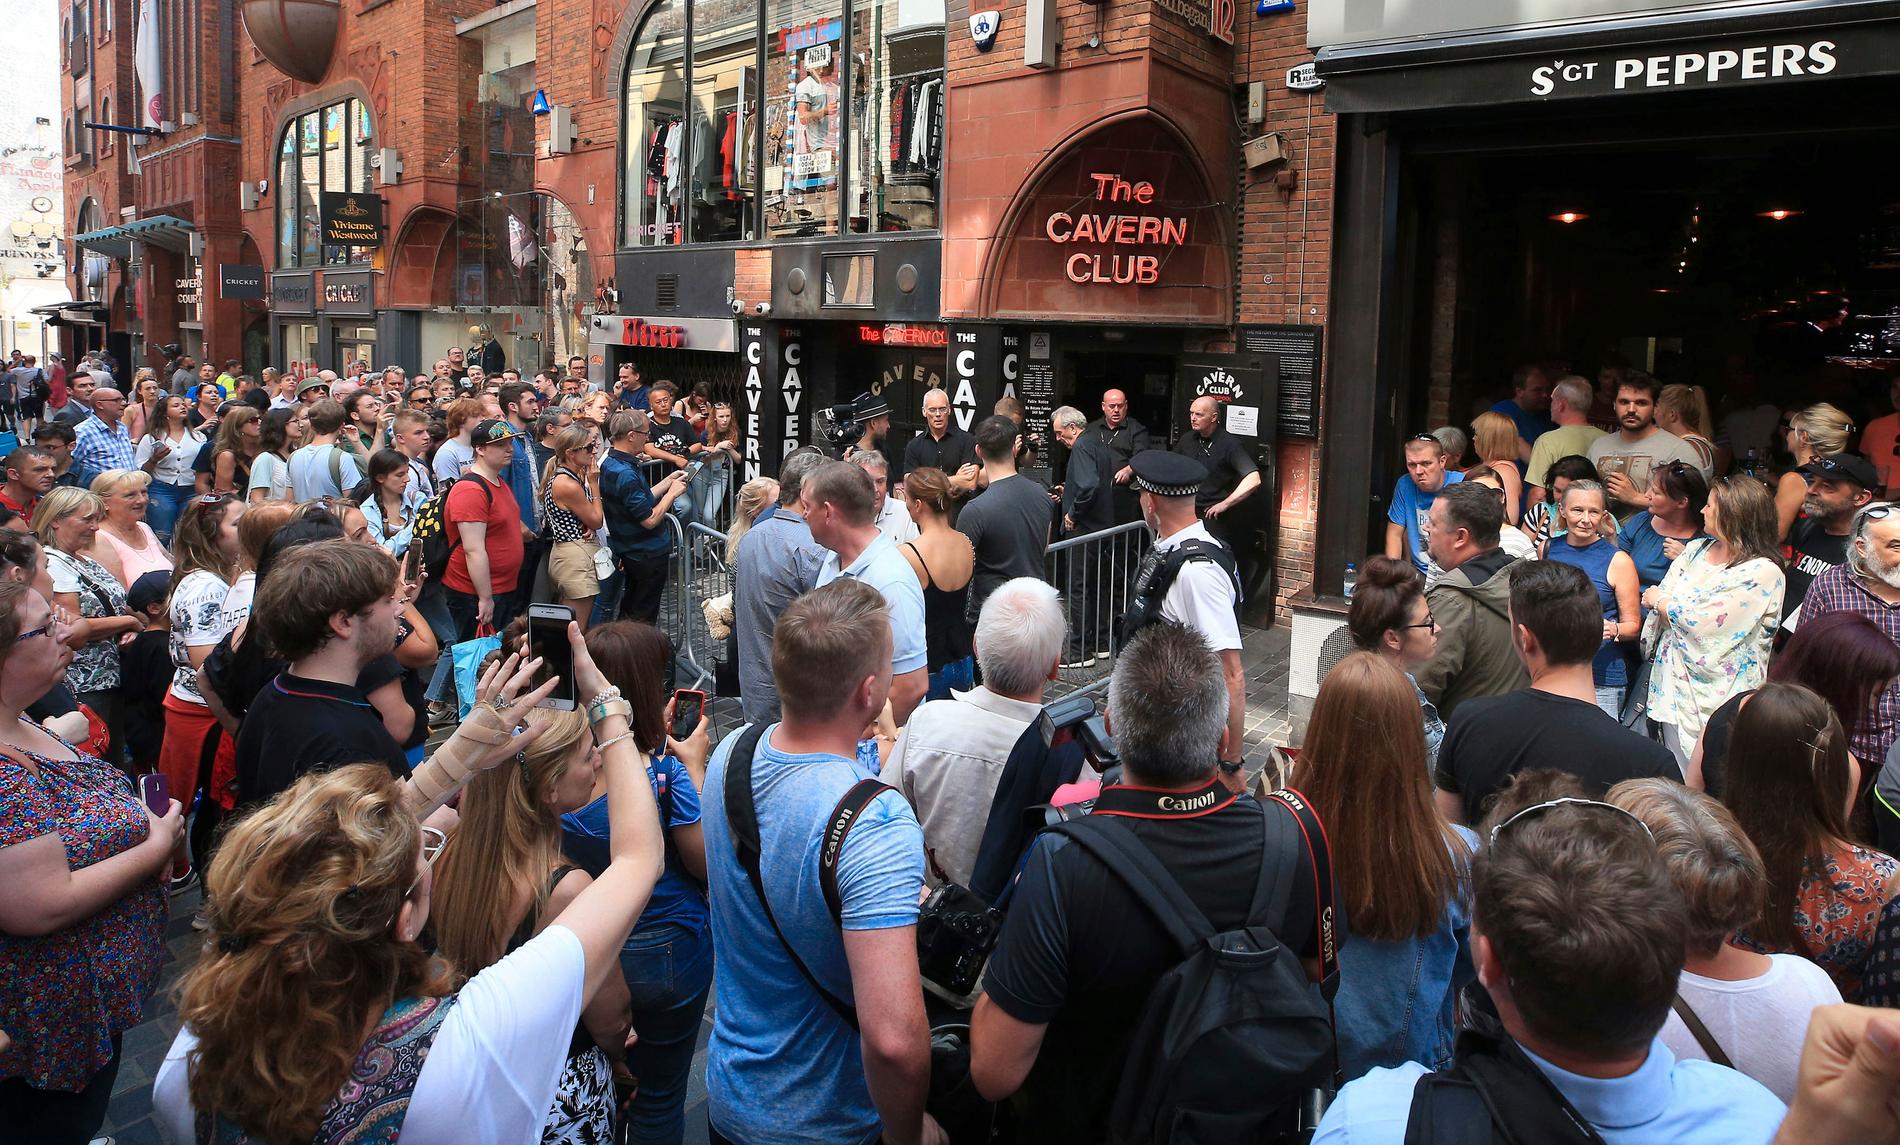 Det var lange køer utenfor The Cavern Club i Liverpool torsdag, der Paul McCartney torsdag holdt en eksklusiv overraskelseskonsert. Foto: Peter Byrne / AP / NTB scanpix.